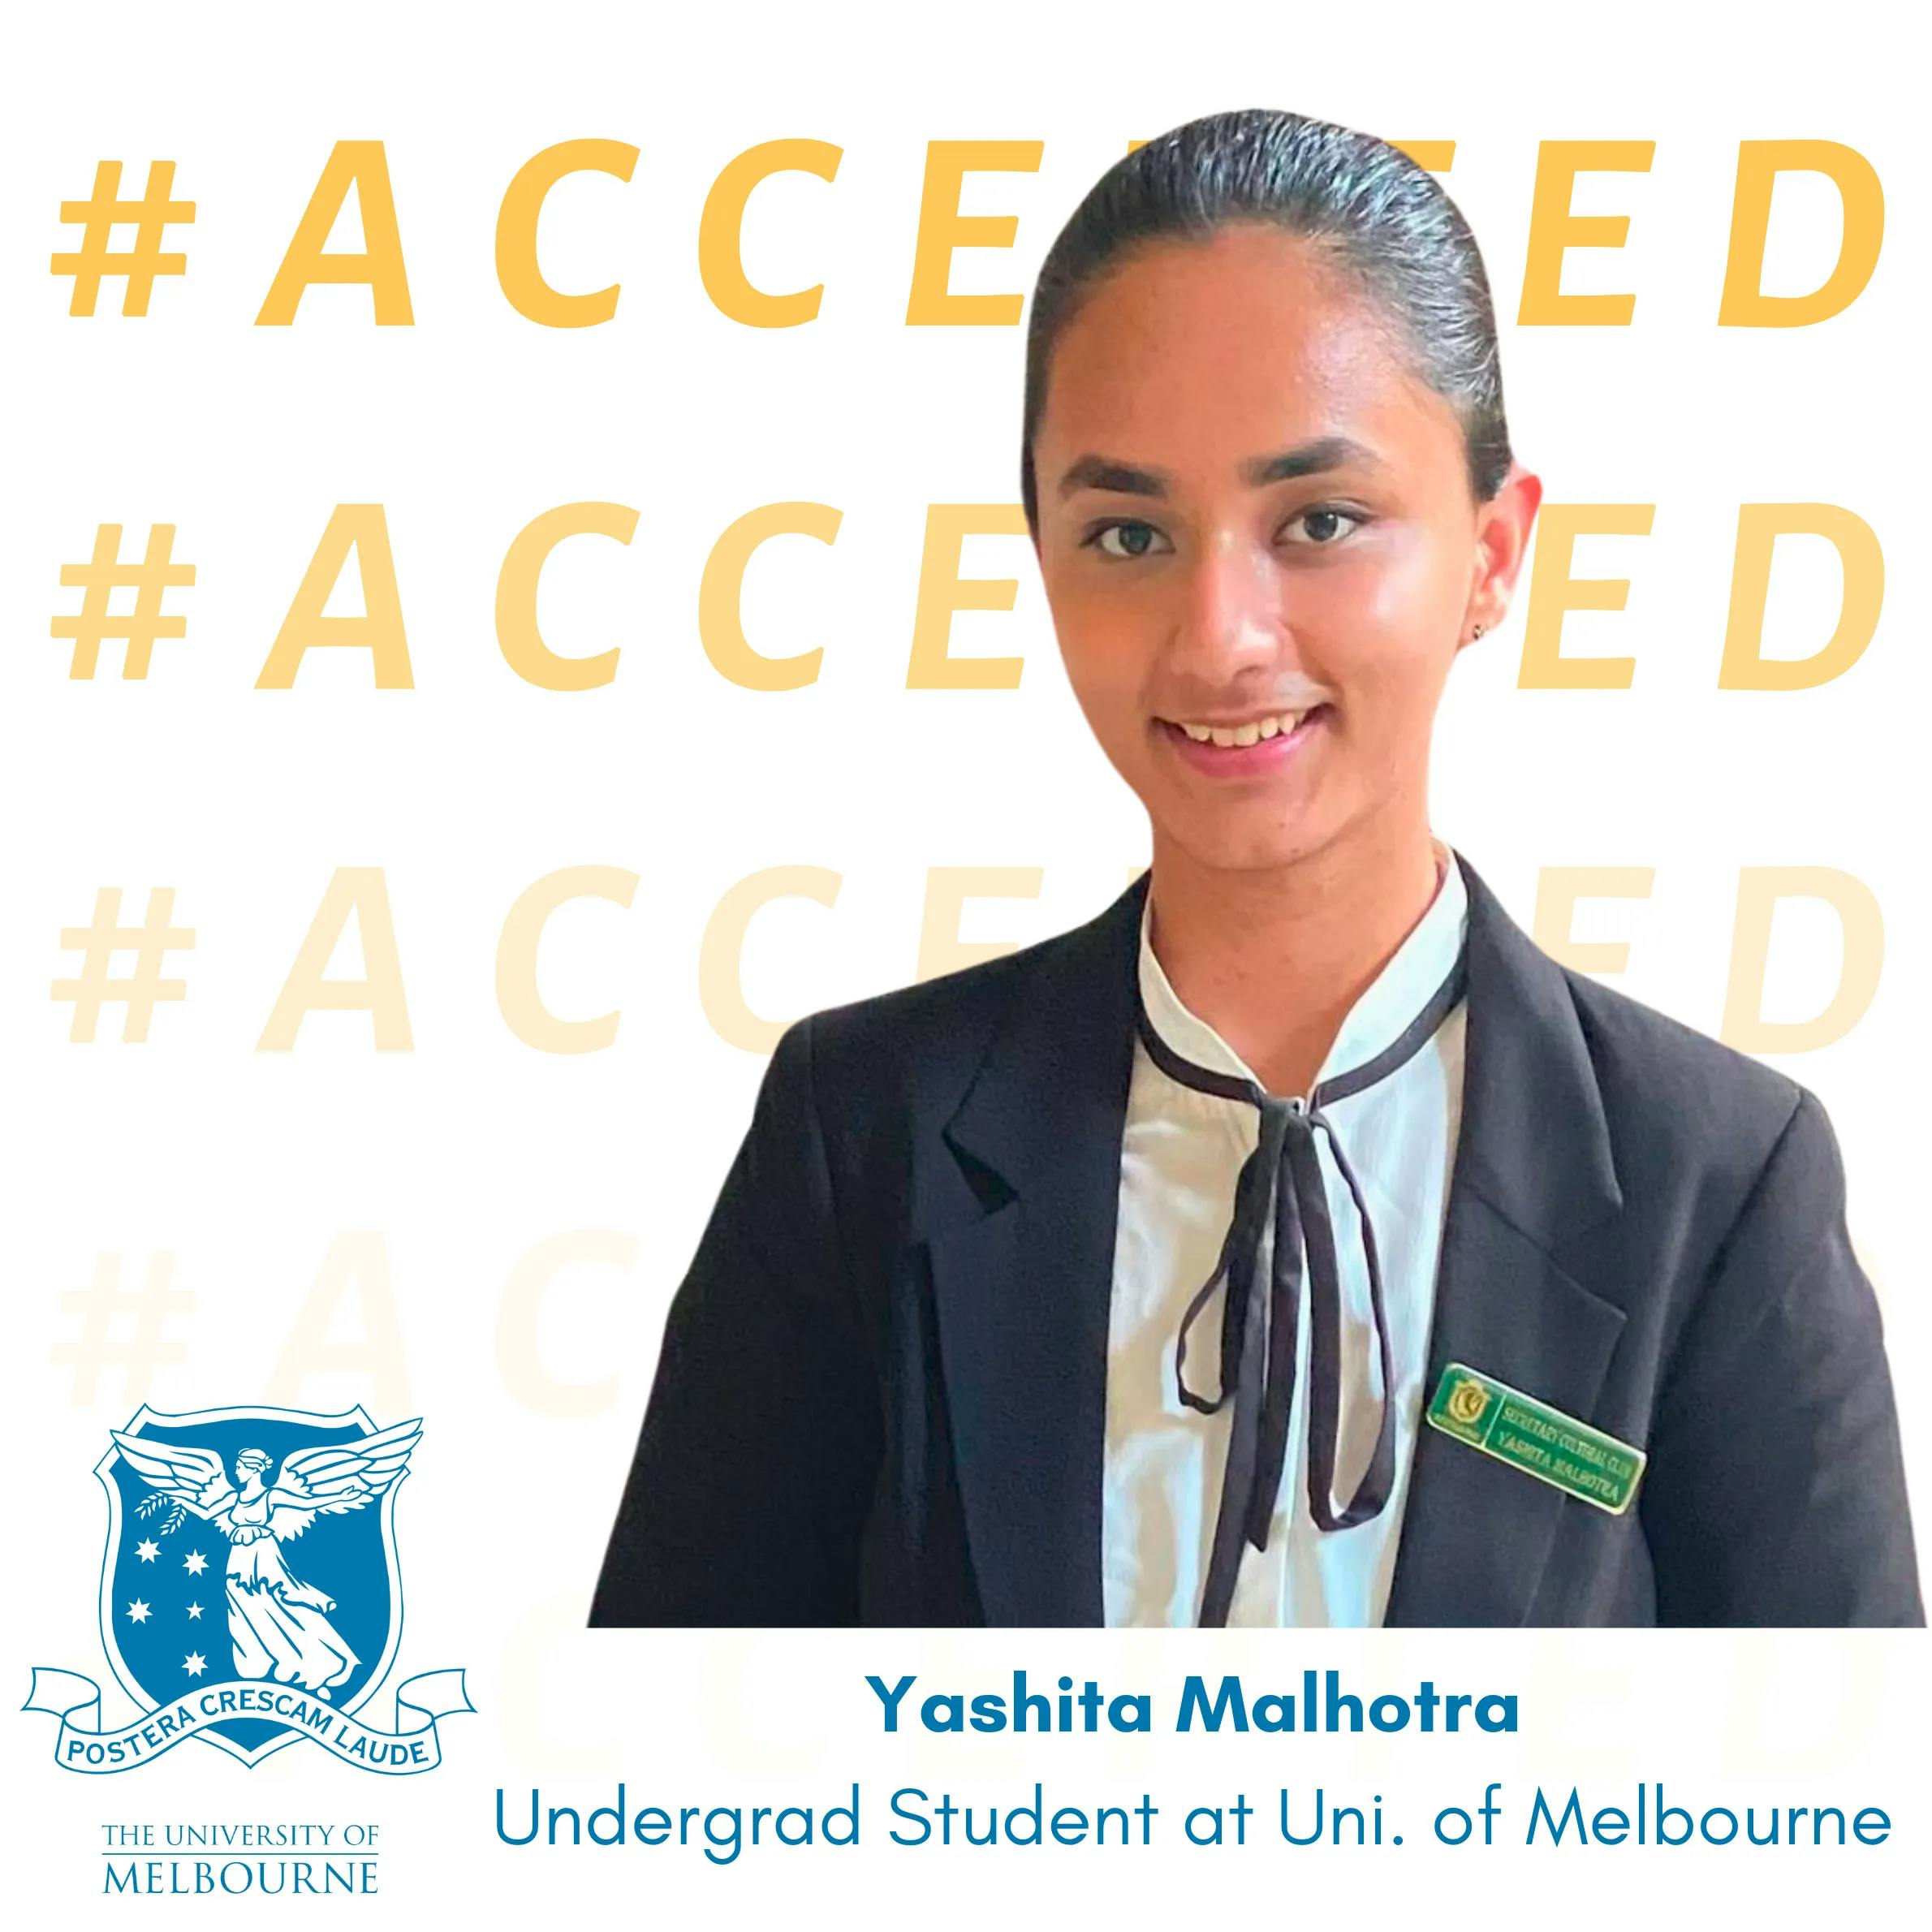 Yashita Malhotra admitted to University of Melbourne